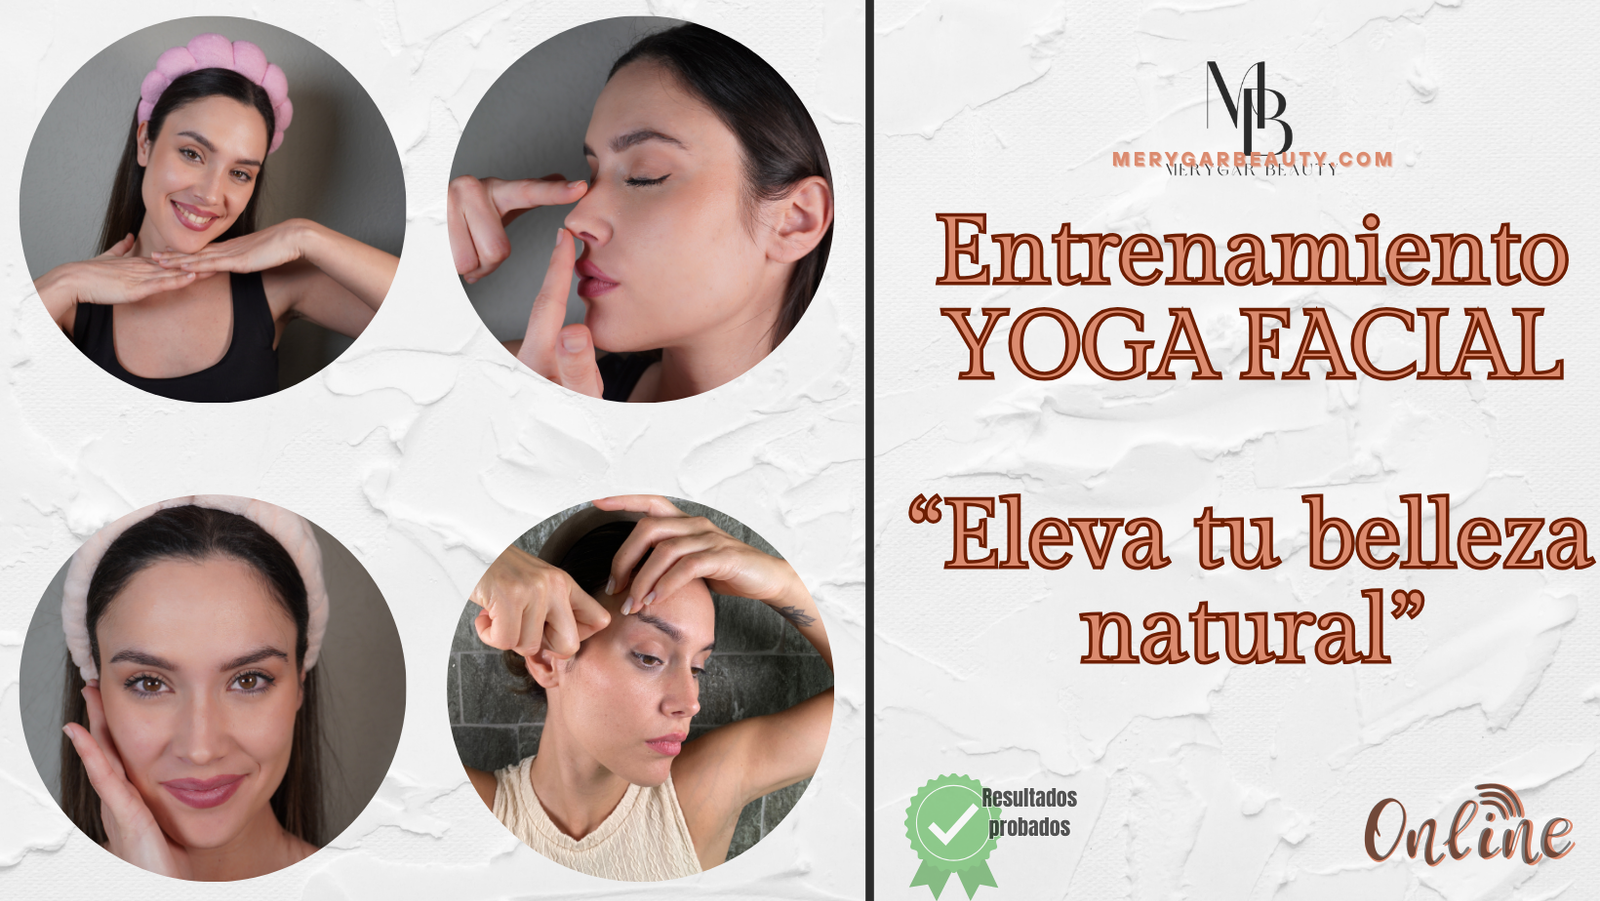 Entrenamiento Yoga Facial “Eleva tu rostro”